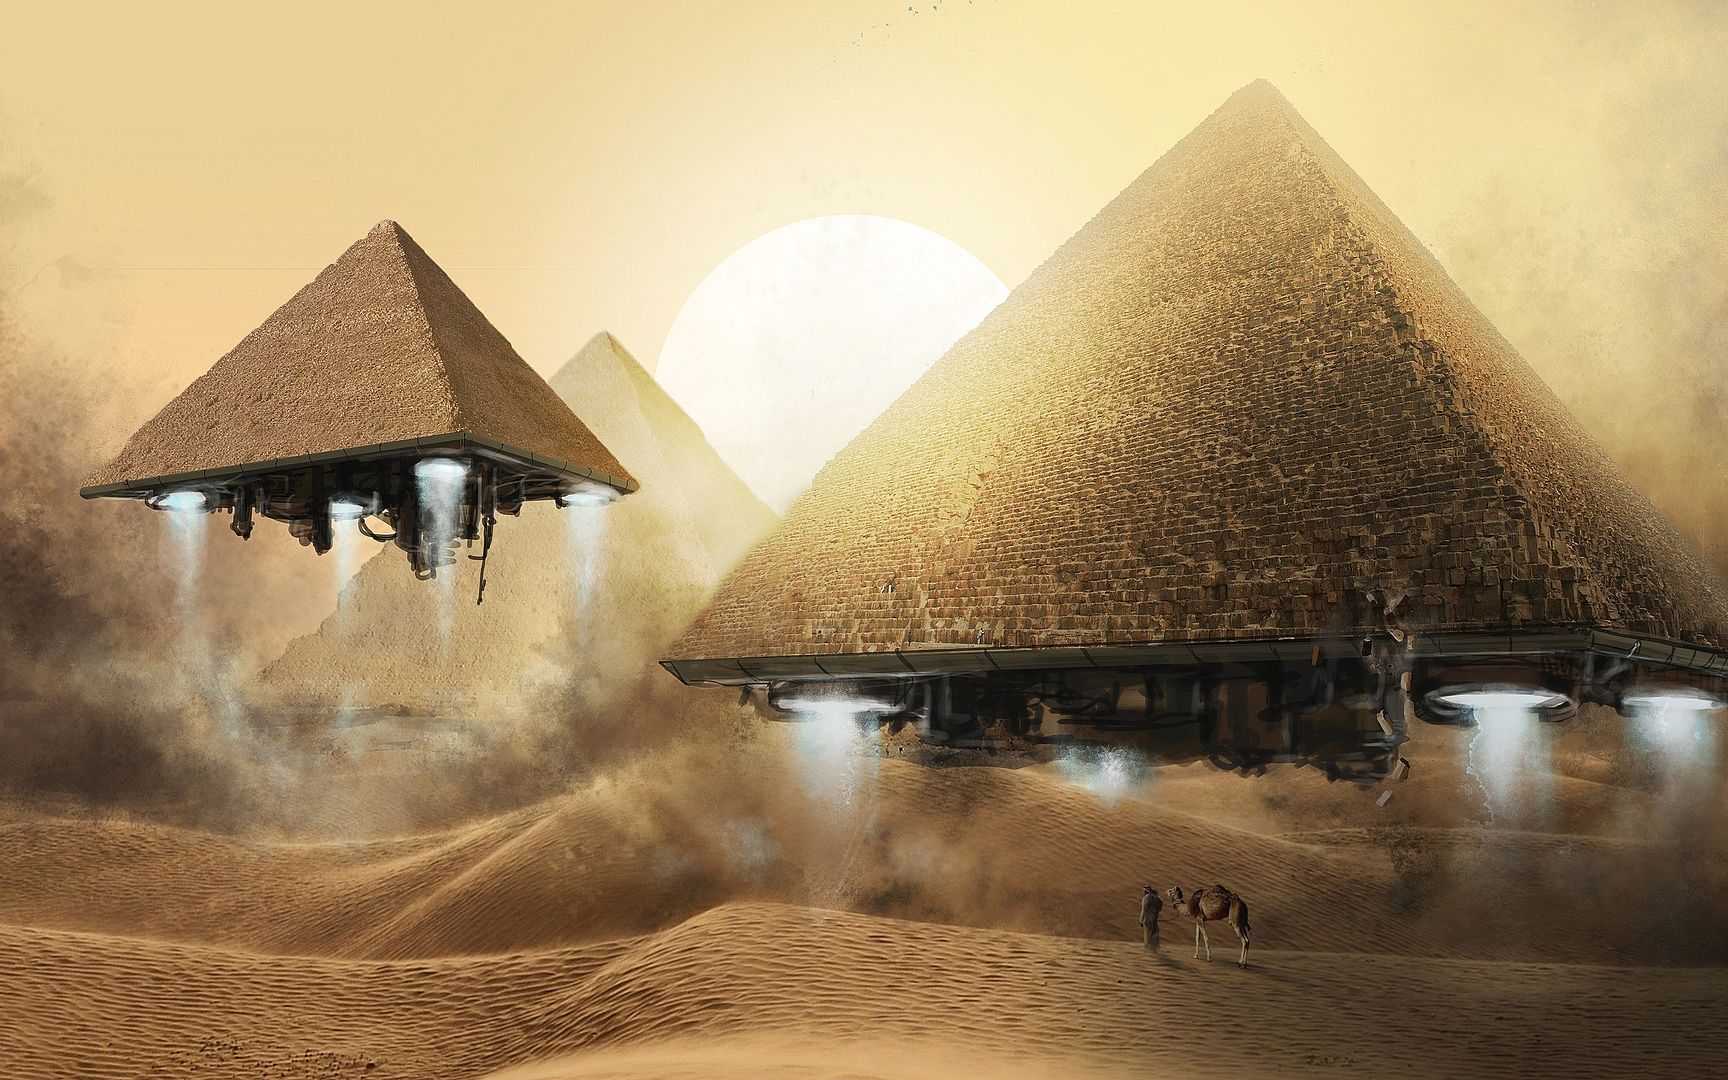 أبو الهول وأهرامات الجيزة صور وخلفيات عالية الجودة  Pyramids of Giza and the Sphinx HD 2111